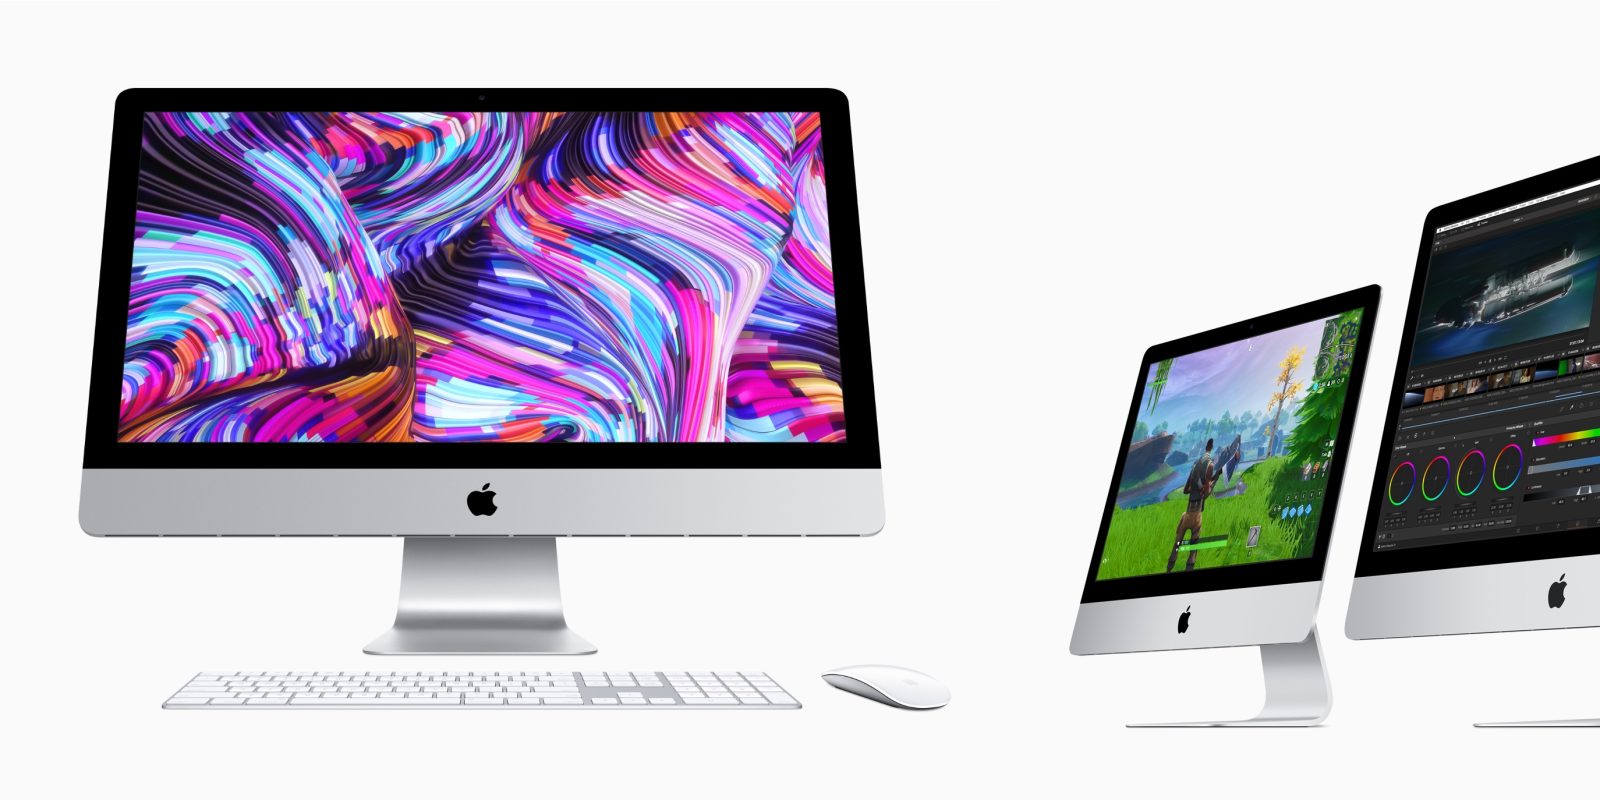 2019 iMac update